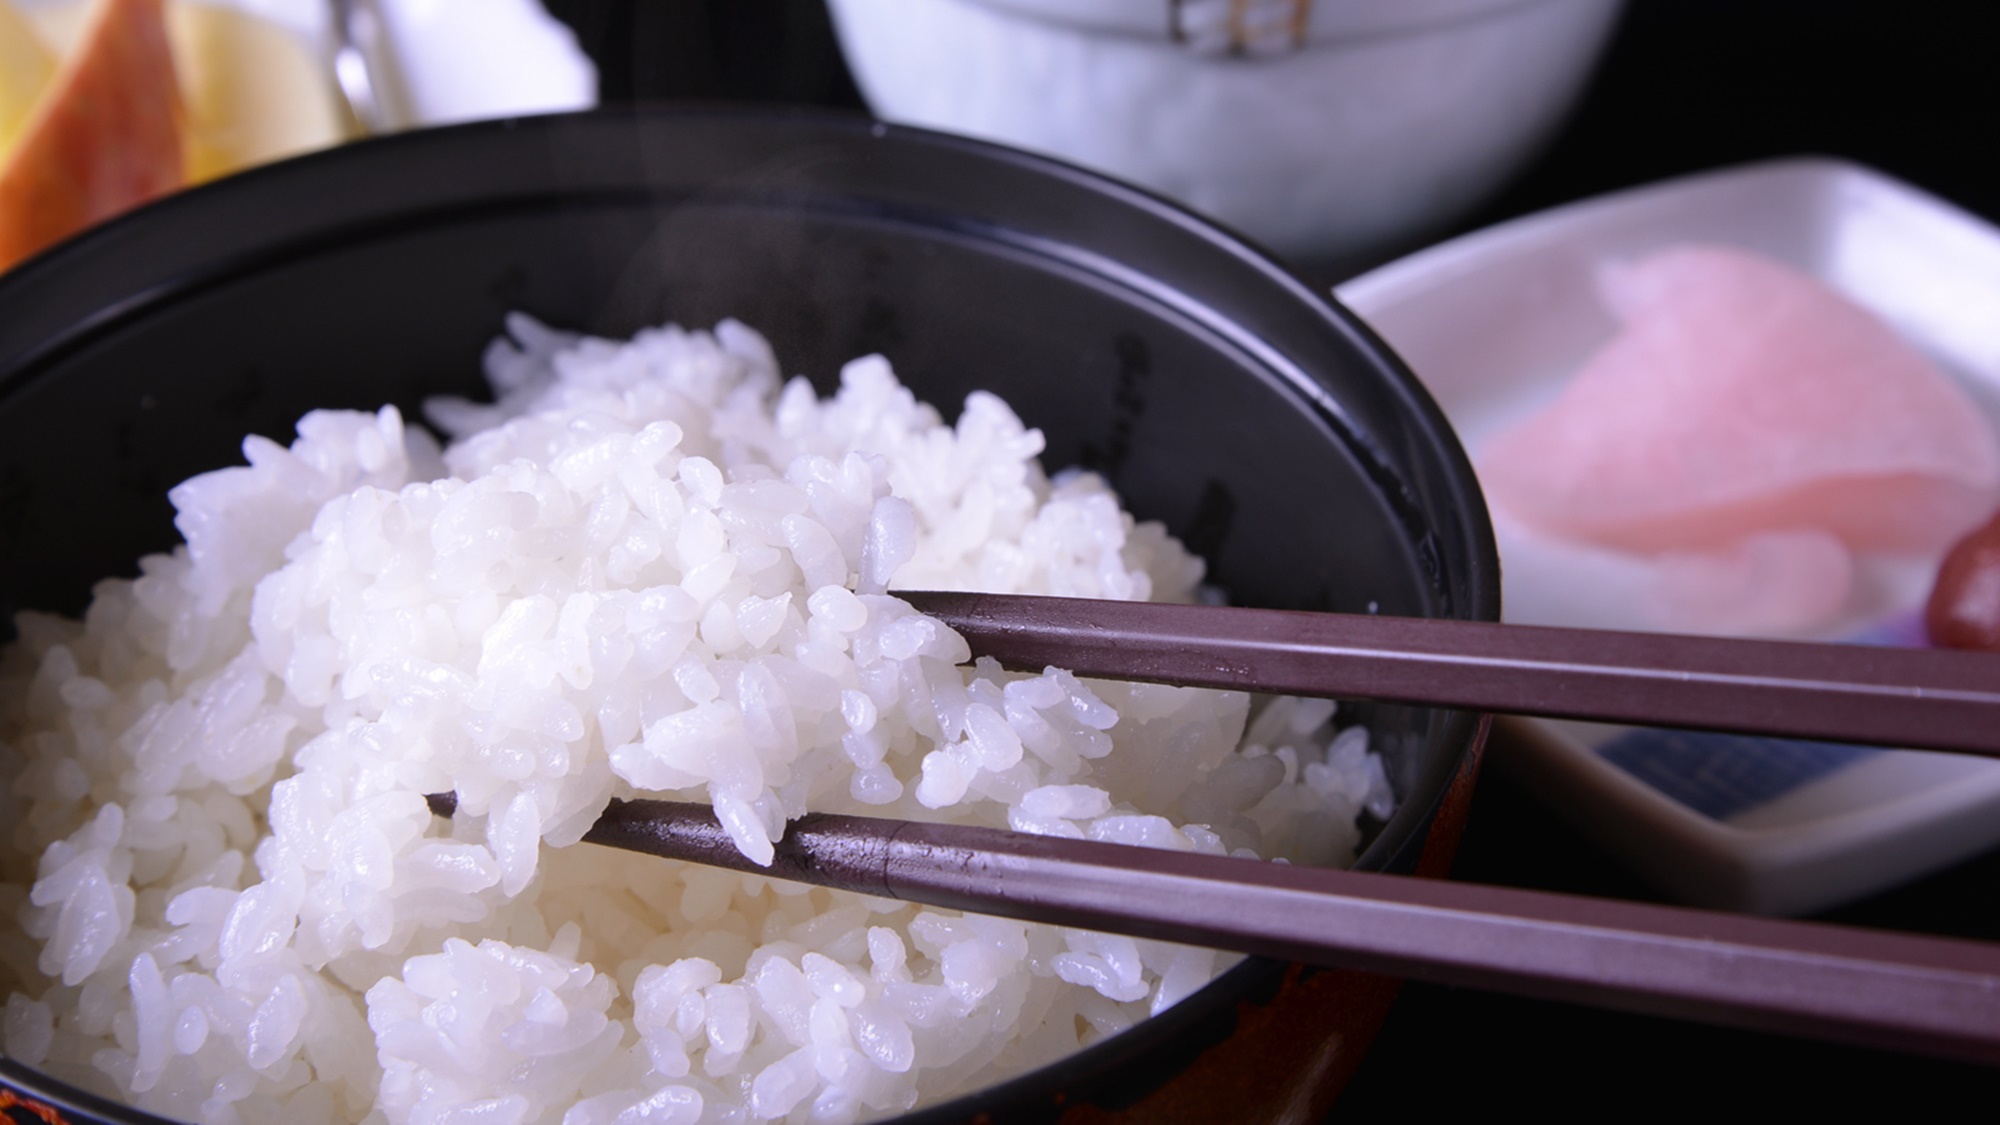 *品質の良いお米でふっくら炊き上げた白米を召し上がれ。